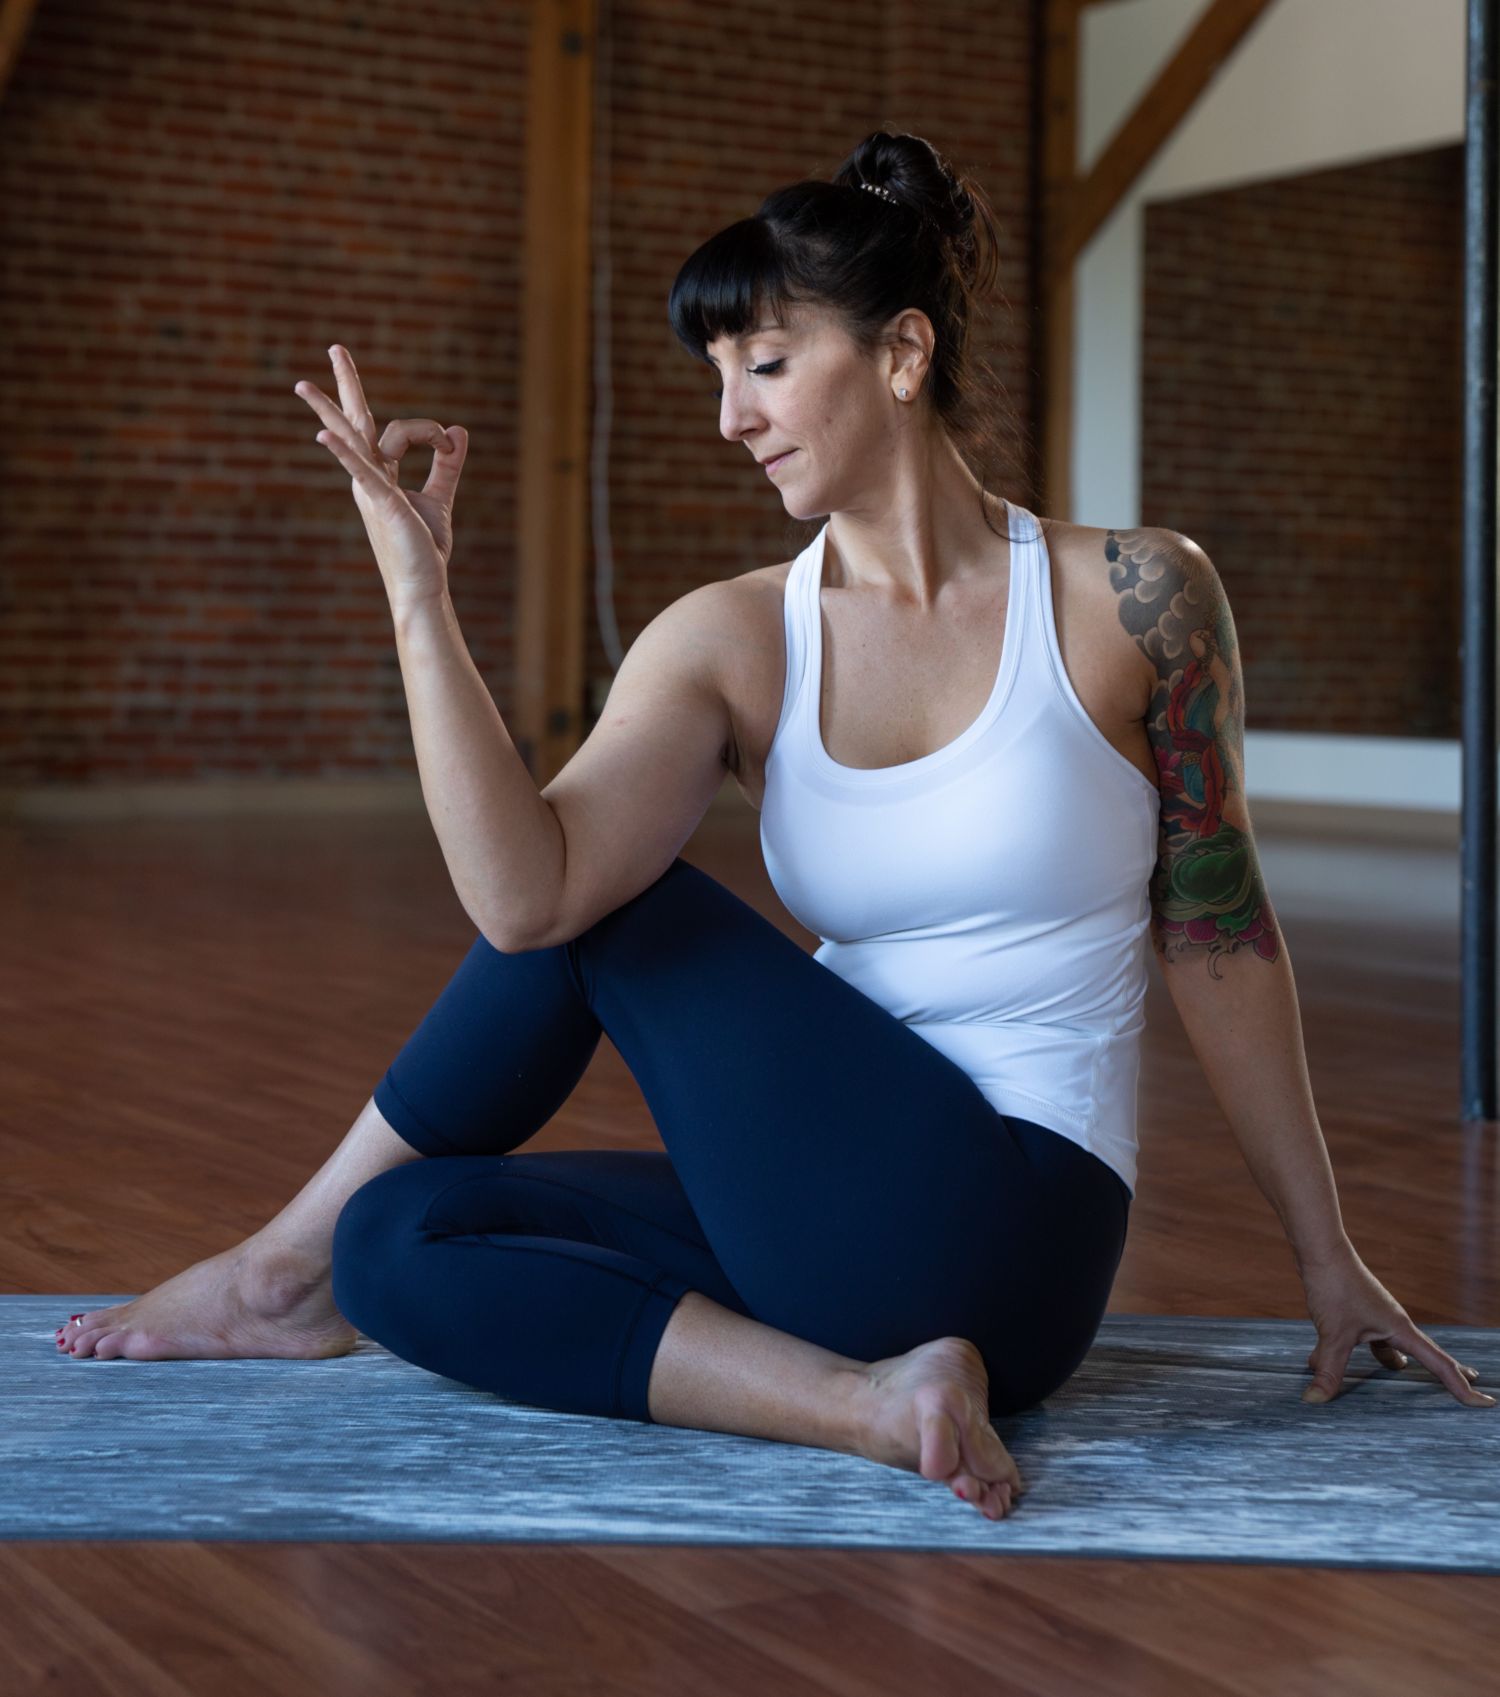 बॉडी को डिटॉक्स करने में मदद कर सकते हैं ये योगासन | easy yoga poses that  detox your body | HerZindagi